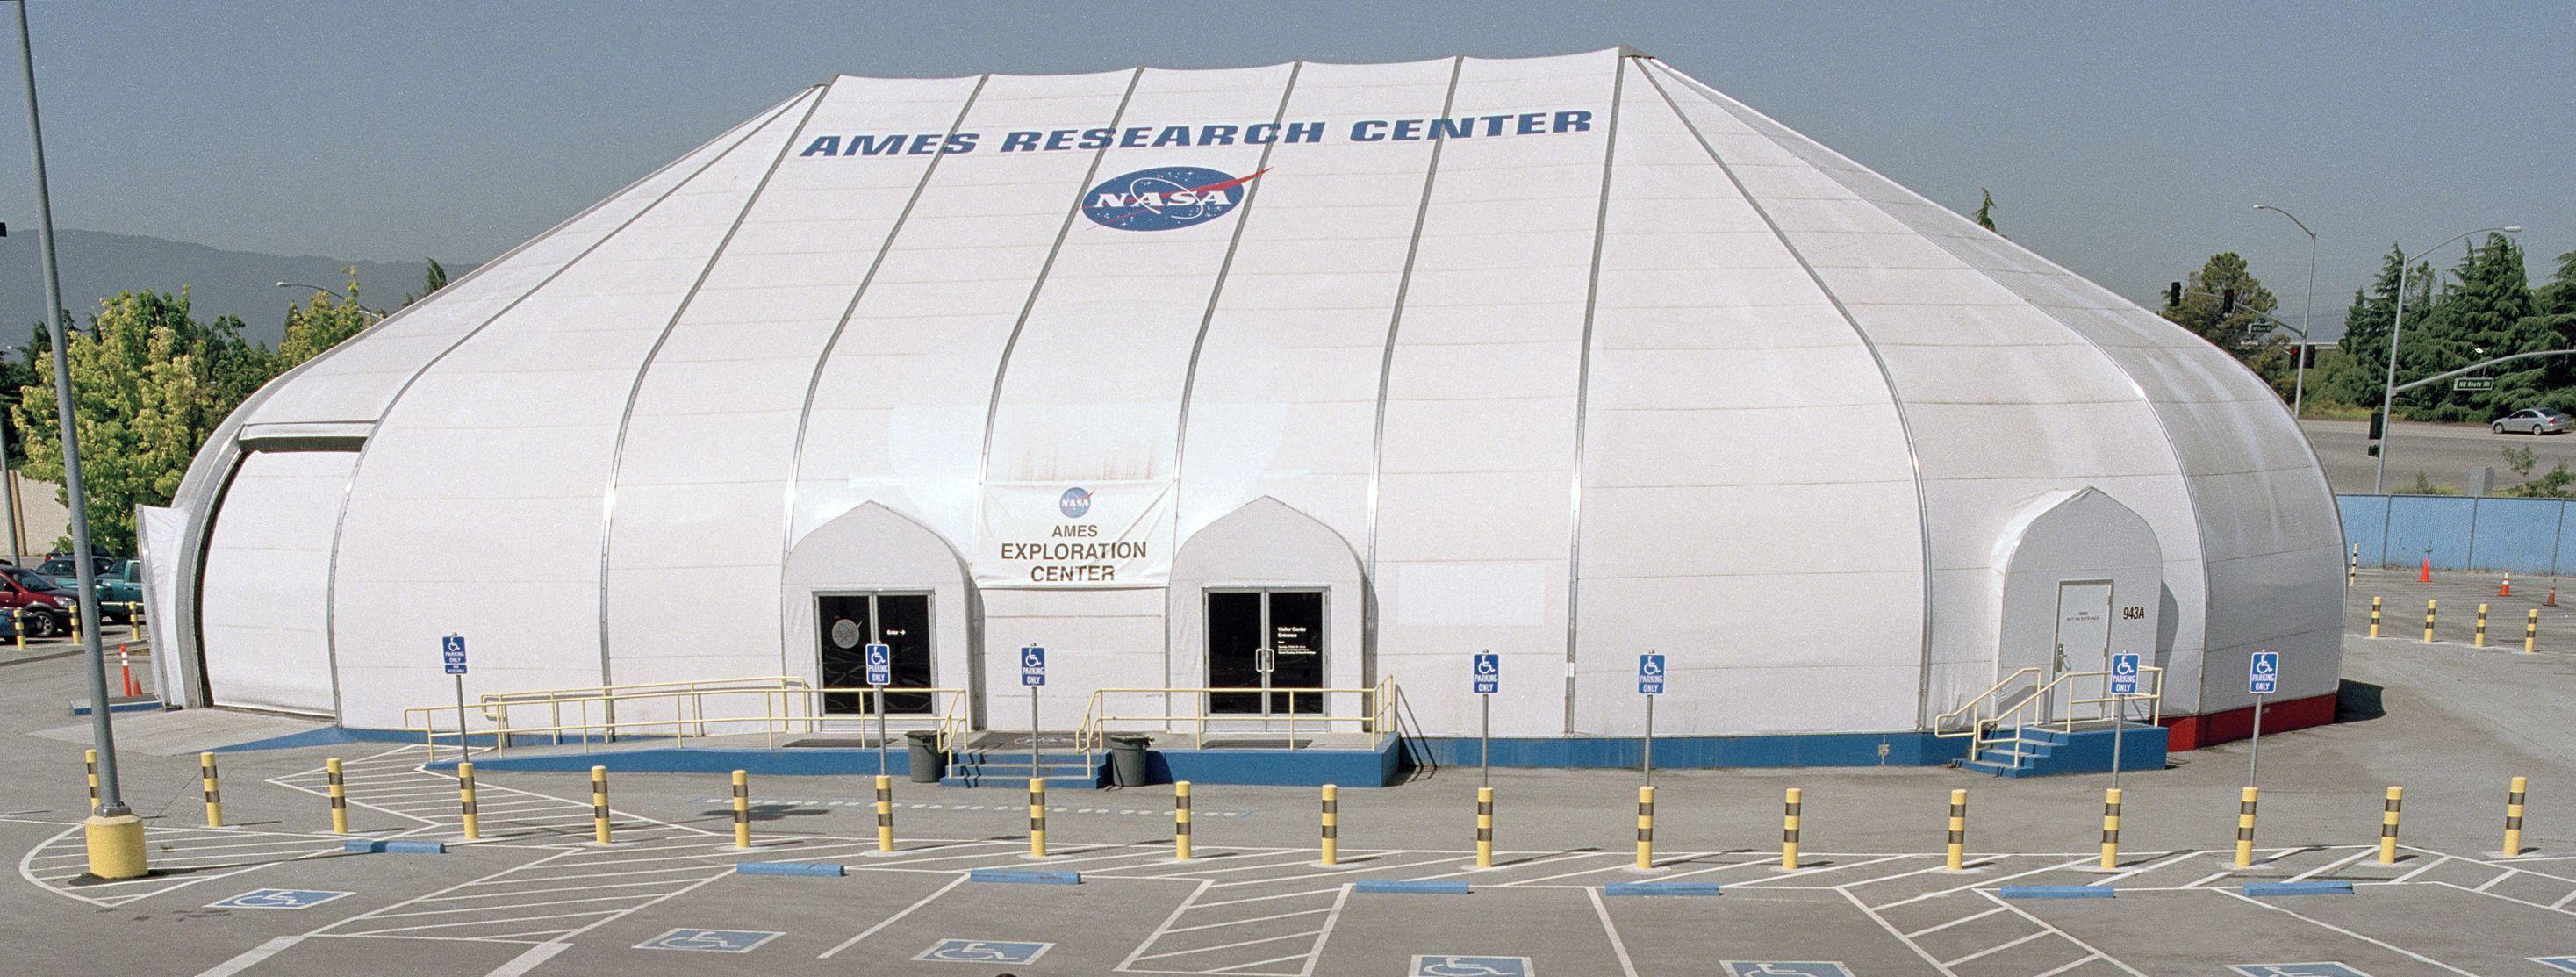 NASA Ames Logo - The NASA Gift Shop in Silicon Valley | NASA